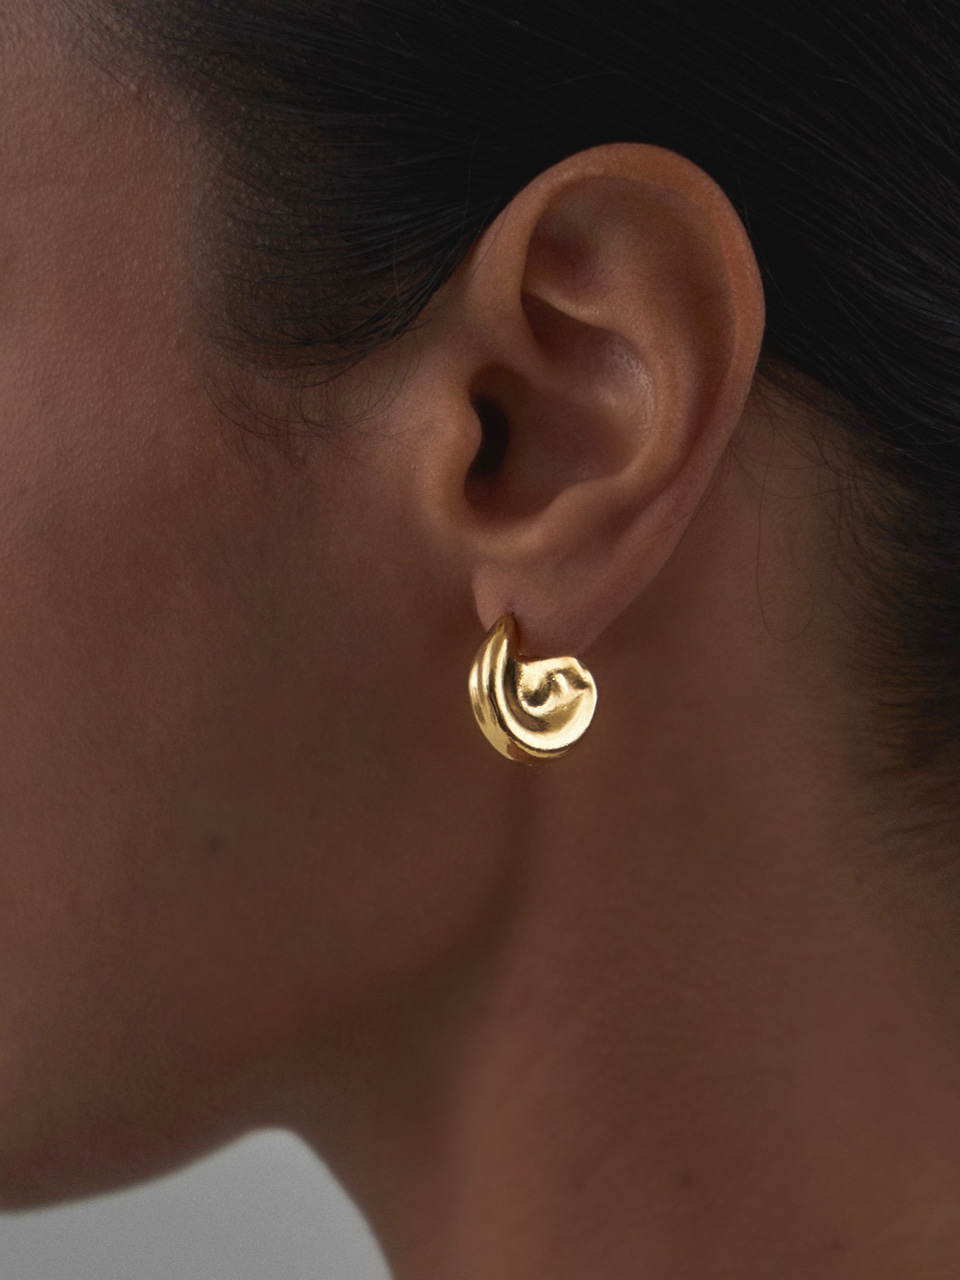 Bodee earrings (gold tone)